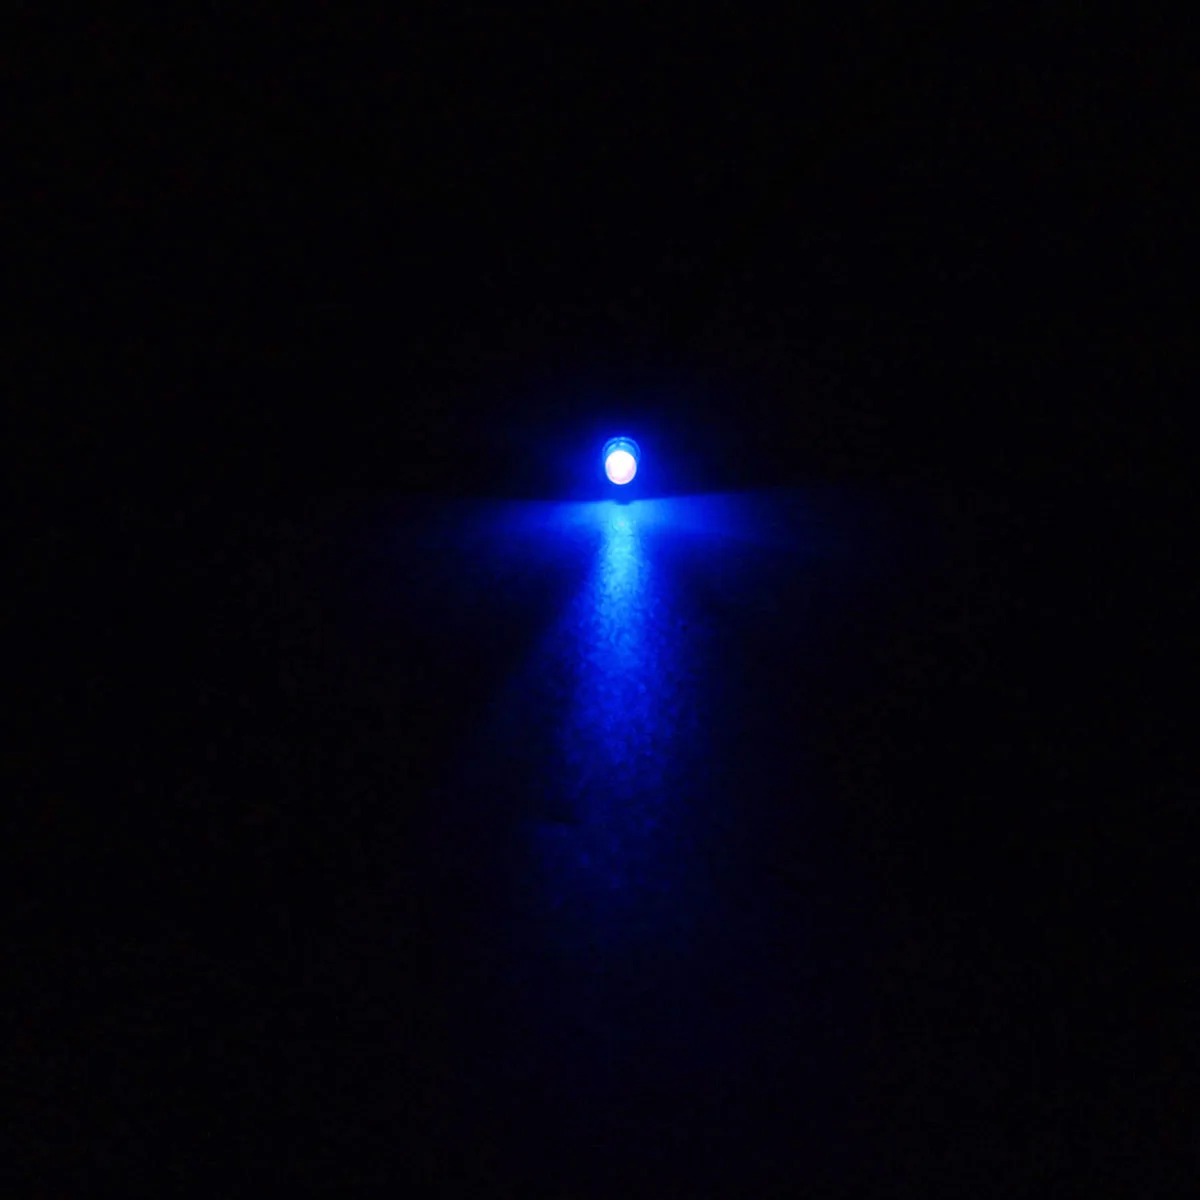 10 шт. 12 В 3 мм Предварительно проводной Постоянный СВЕТОДИОДНЫЙ Ультра-яркий прозрачный водяной лампы Предварительно проводной оранжевый синий желтый белый светодиодный s диоды - Испускаемый цвет: Blue